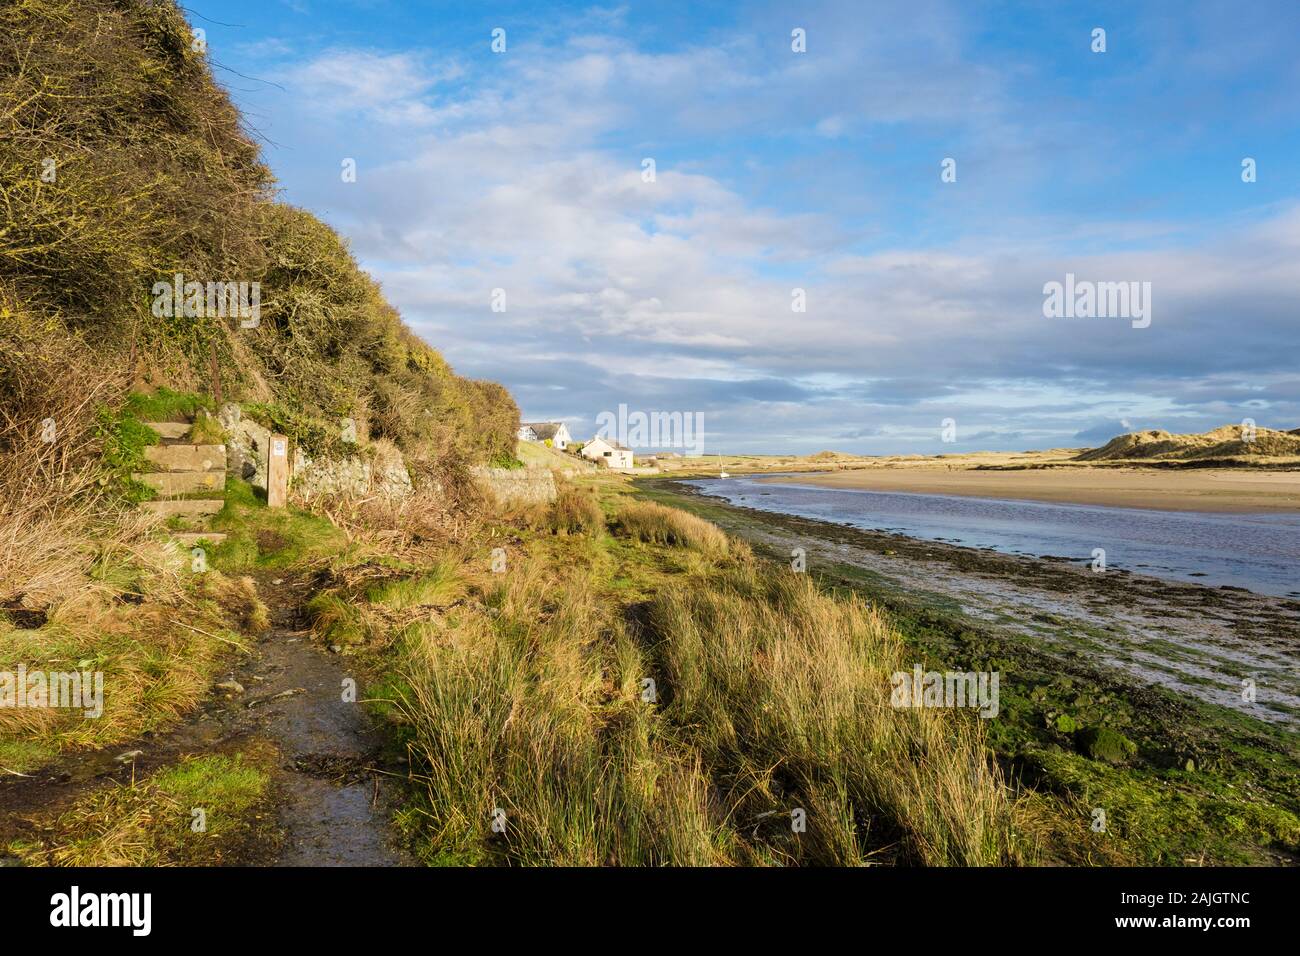 À l'intérieur des terres le long de l'ISLE OF ANGLESEY sentier du littoral à côté de la rivière Afon Ffraw à marée basse en hiver. Aberffraw, Anglesey, au nord du Pays de Galles, UK, Grande-Bretagne, E Banque D'Images